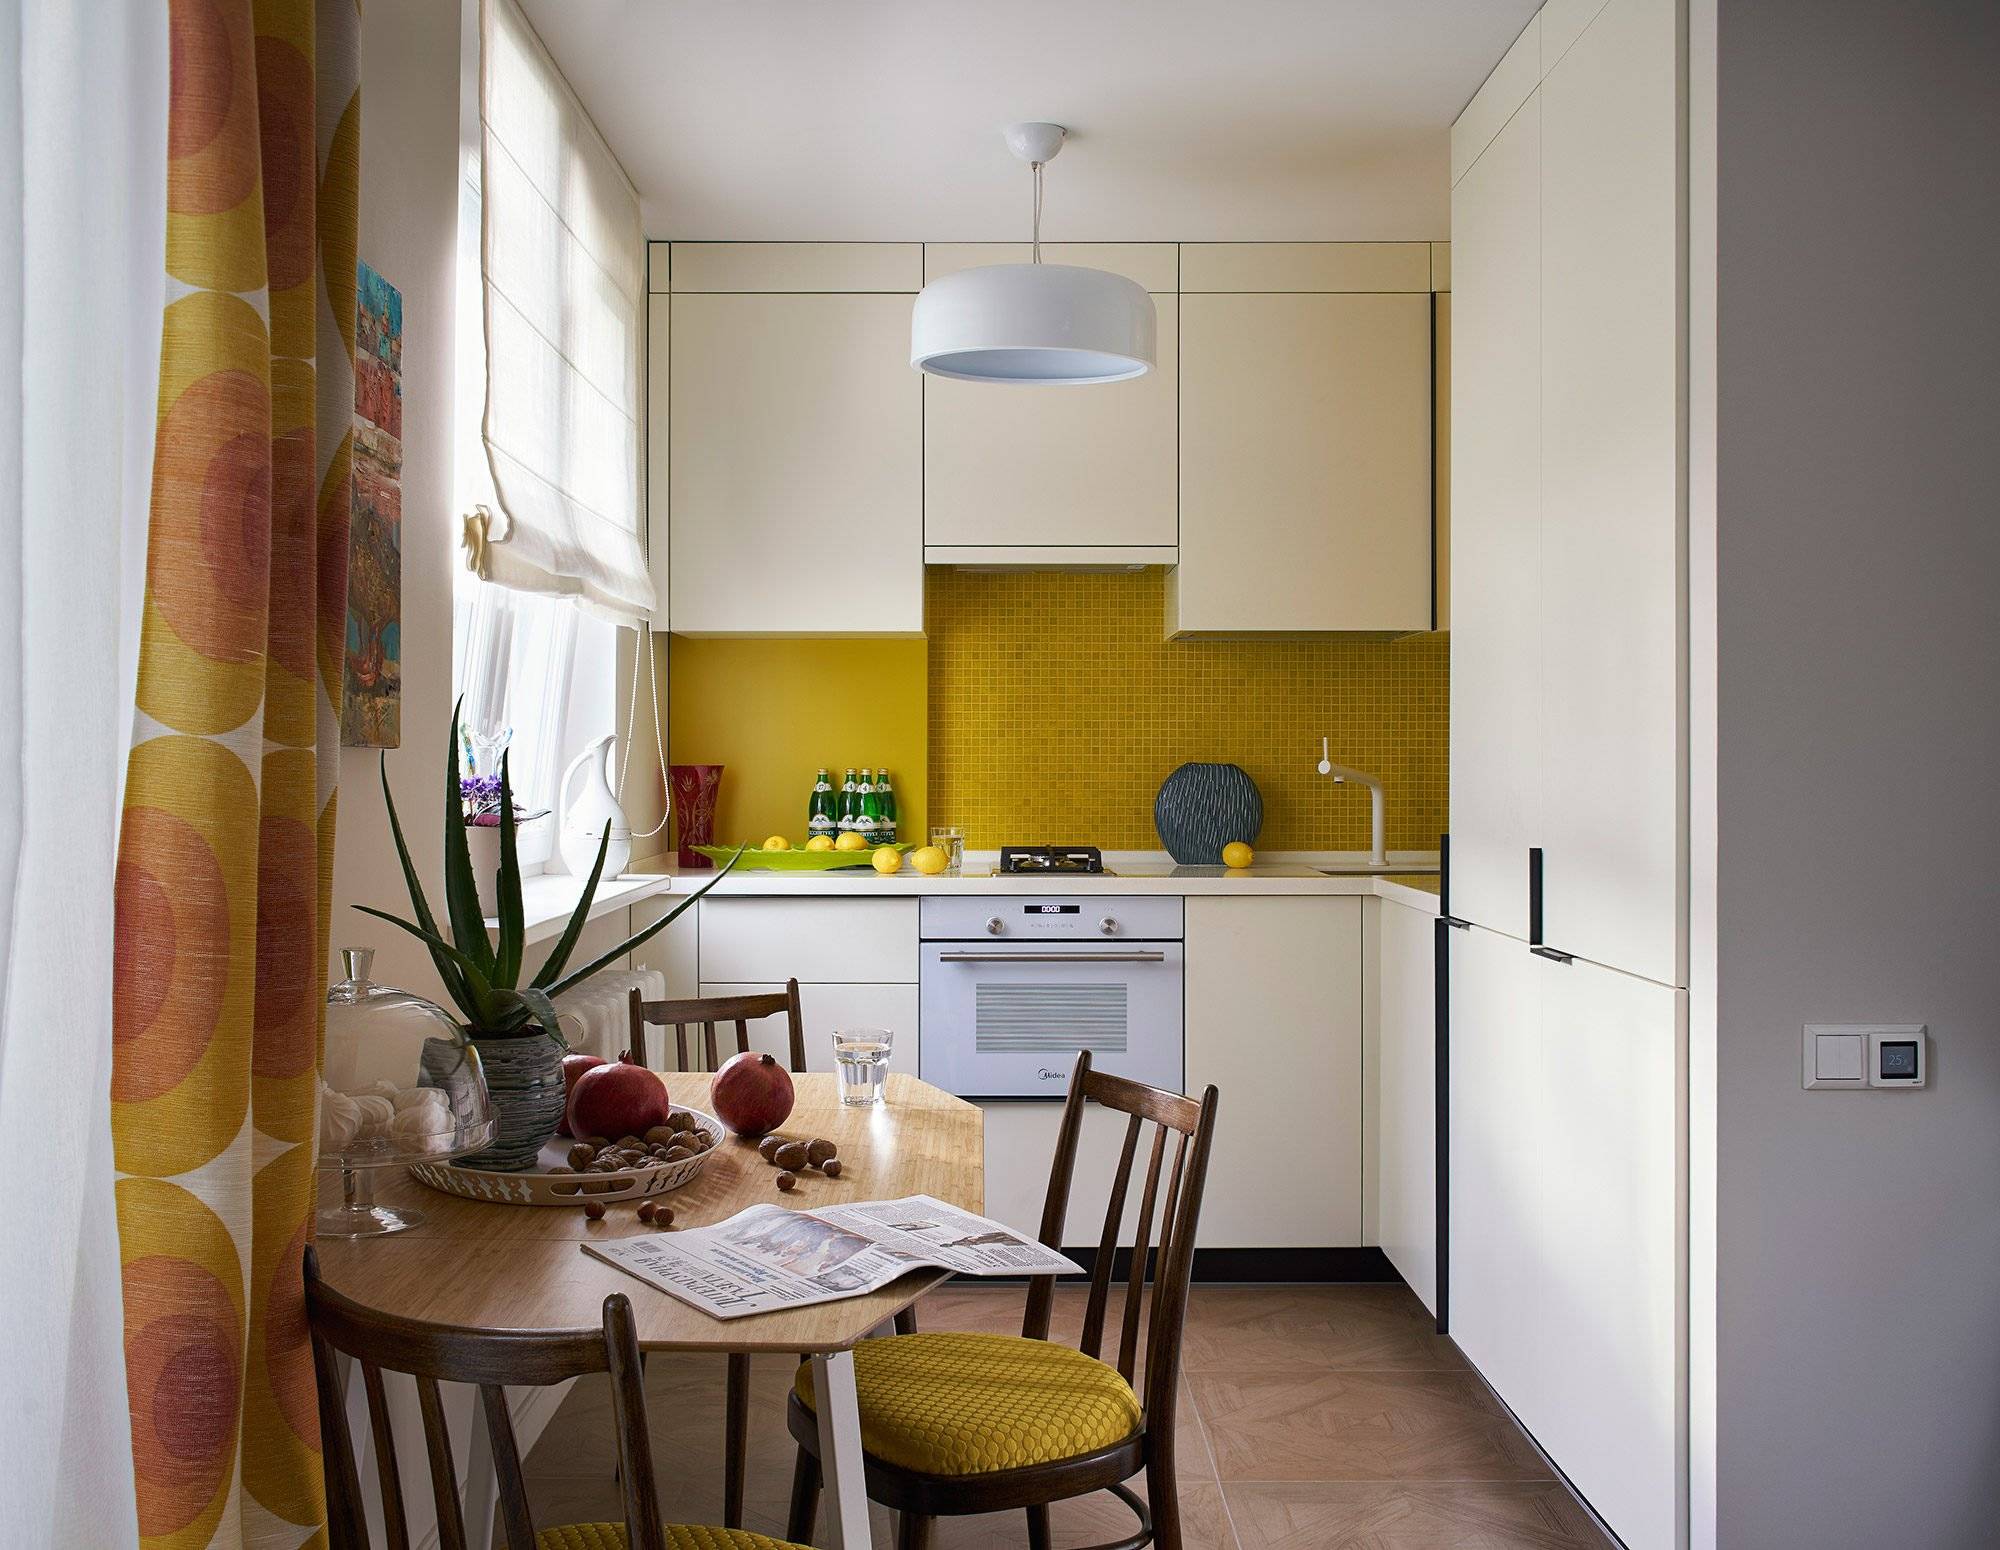 Планировка маленькой кухни (100 фото): примеры красивого дизайна и сочетания элементов в интерьереварианты планировки и дизайна